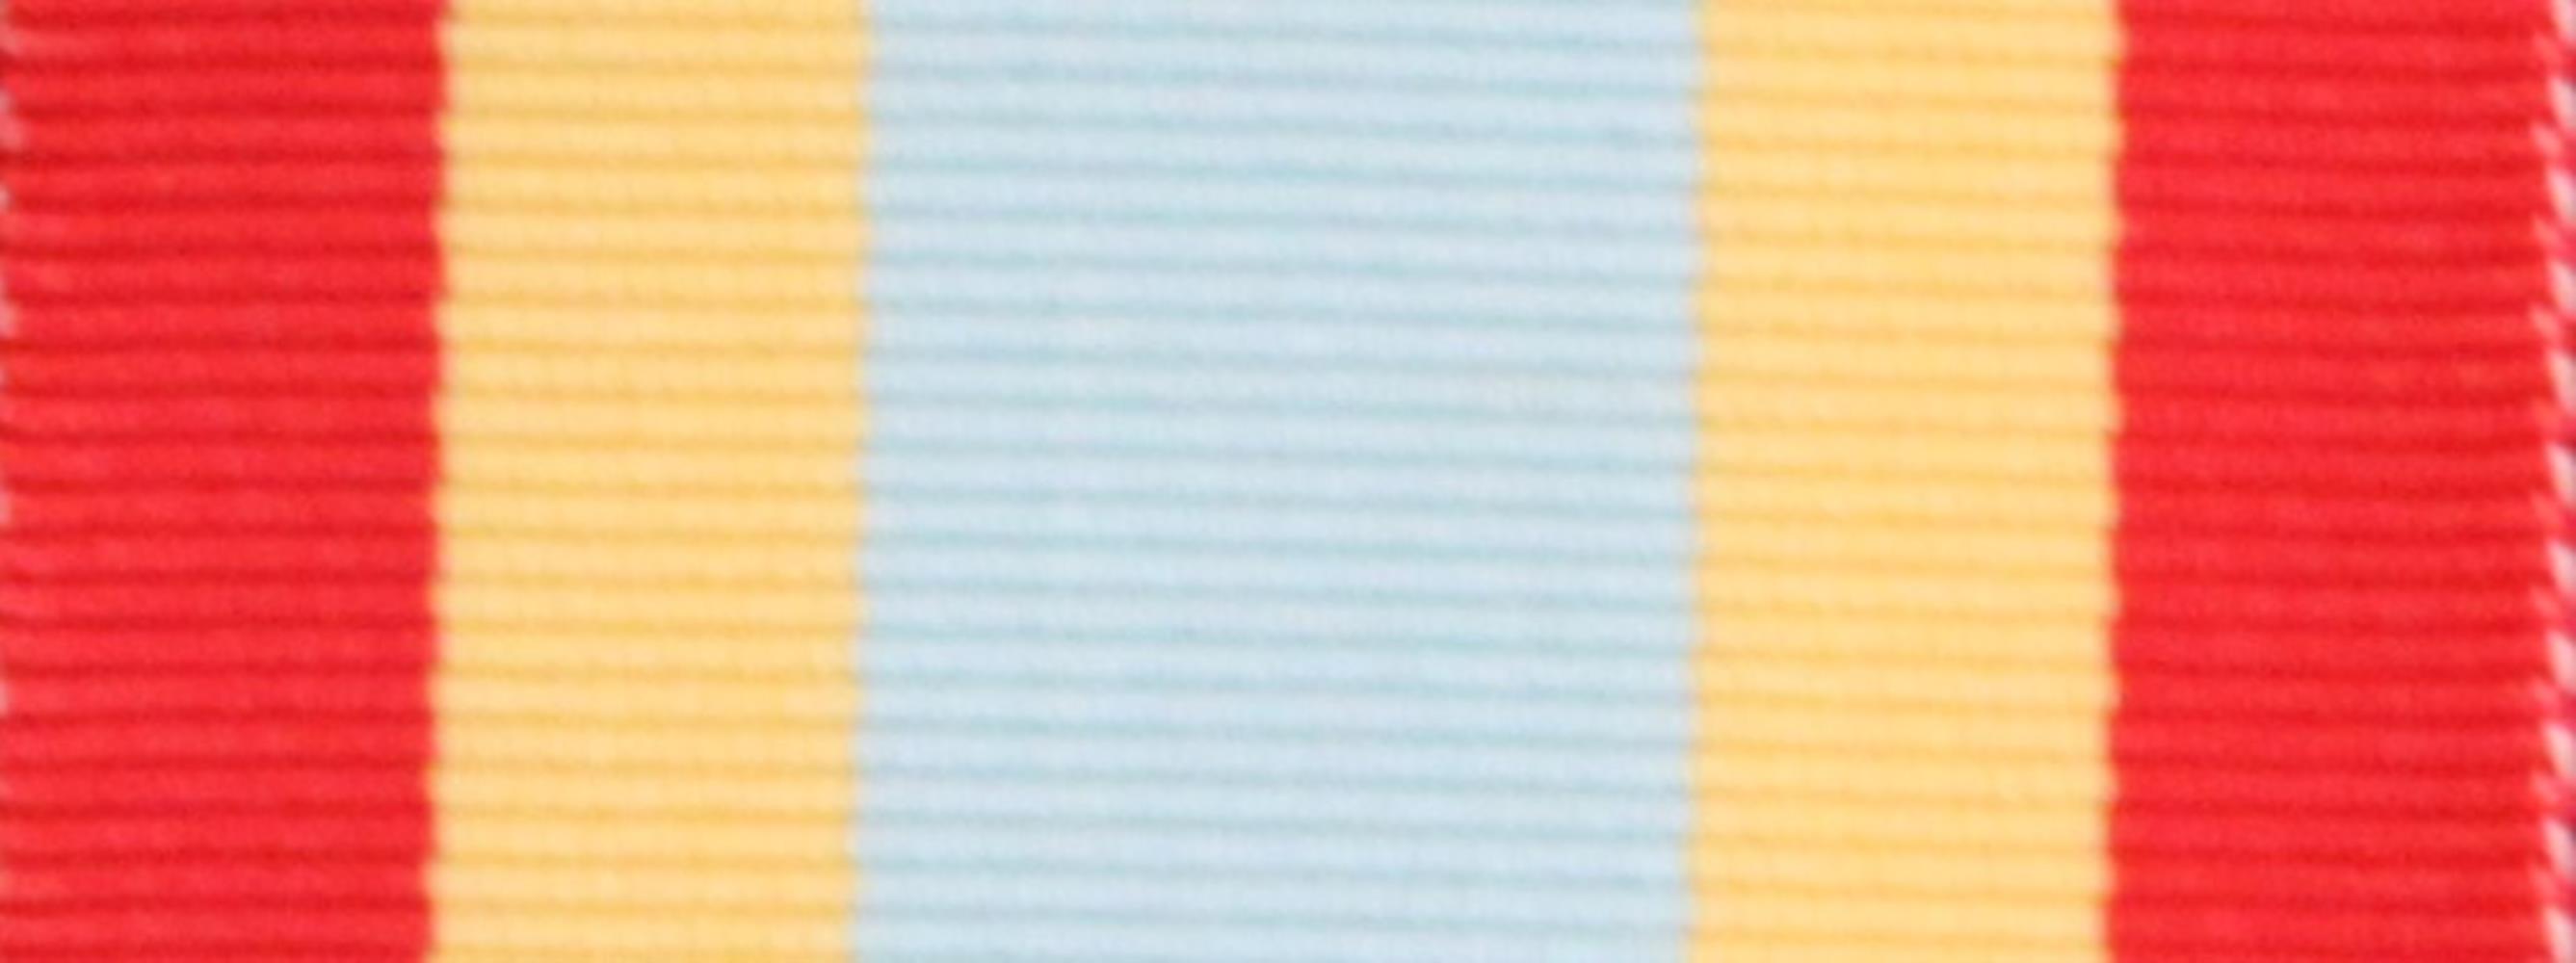 Worcestershire Medal Service: UAE - Distinguished Service Medal Ribbon